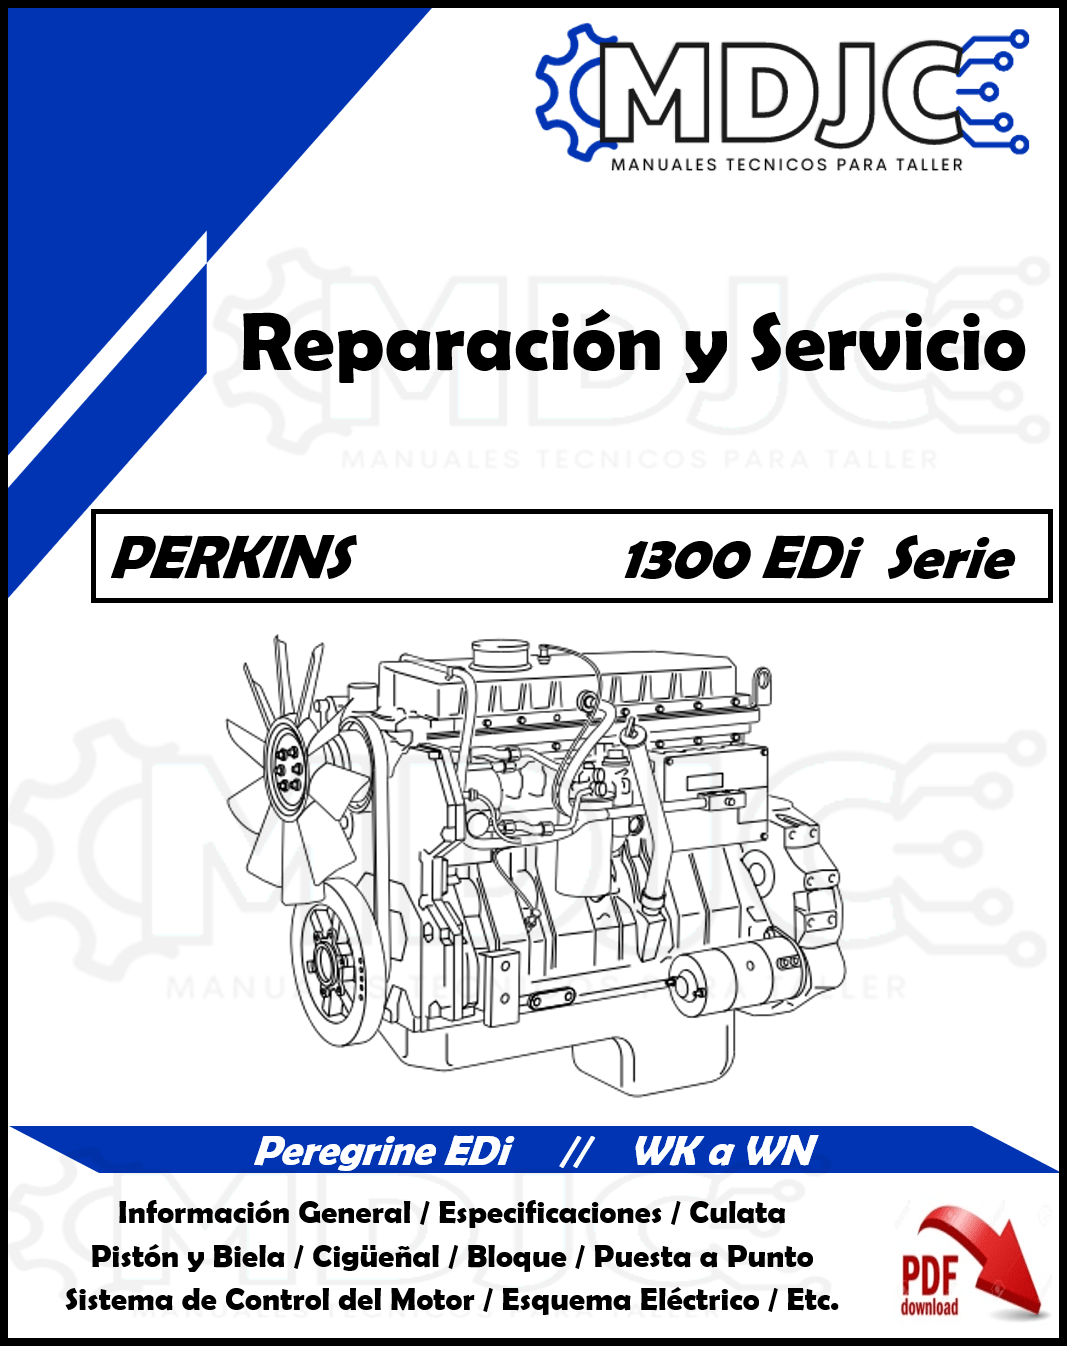 Manual de Taller (Reparación y Servicio) Motor Perkins 1300 EDi Serie / Peregrine EDi